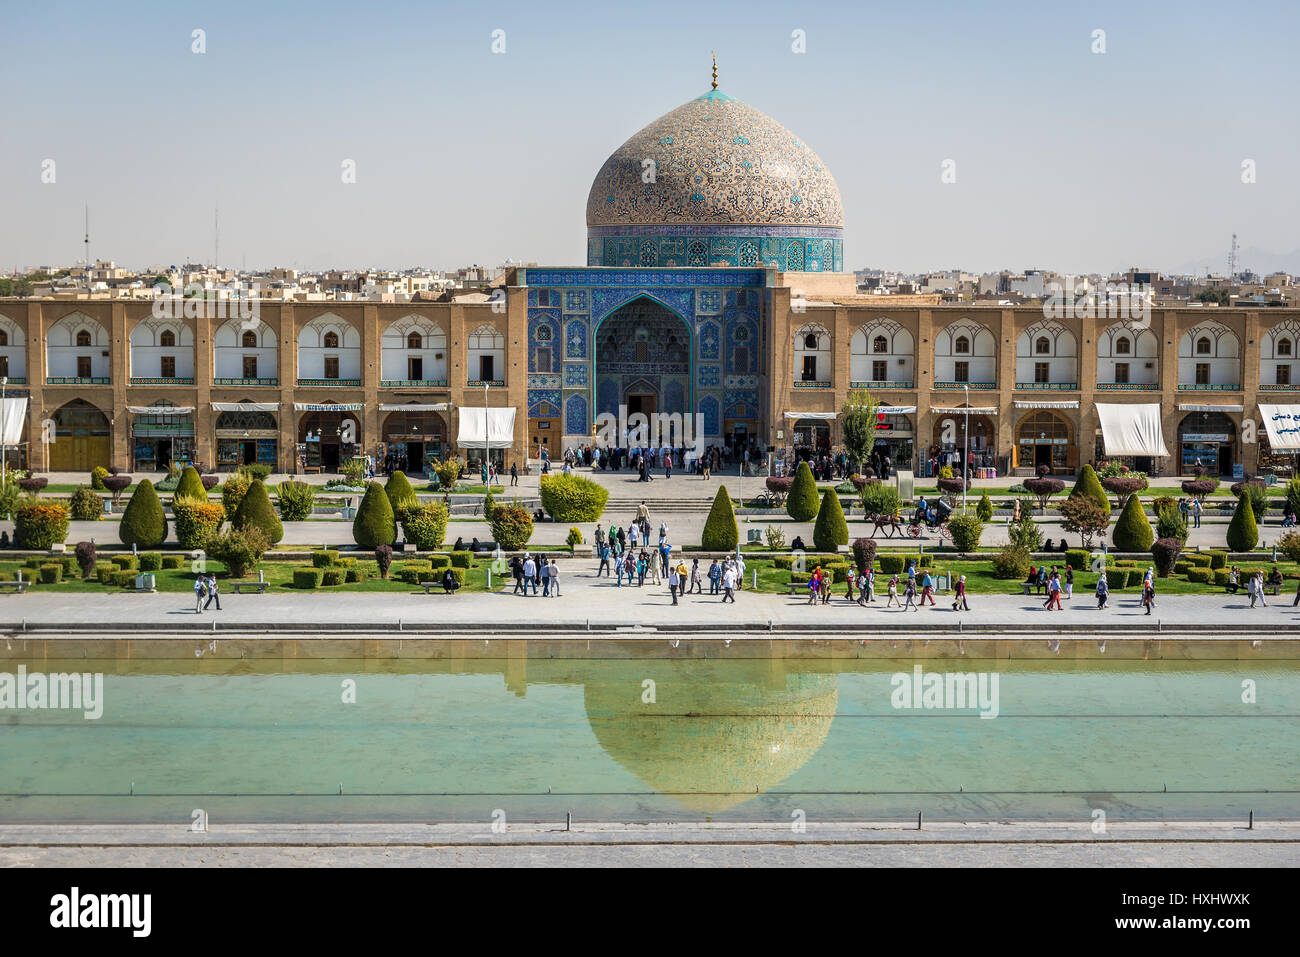 Piscine de Naqsh-e Jahan Square (Place Imam, formlerly Shah Square) au centre d'Isfahan en Iran. Avec vue sur la Mosquée de Sheikh Lotfollah Banque D'Images